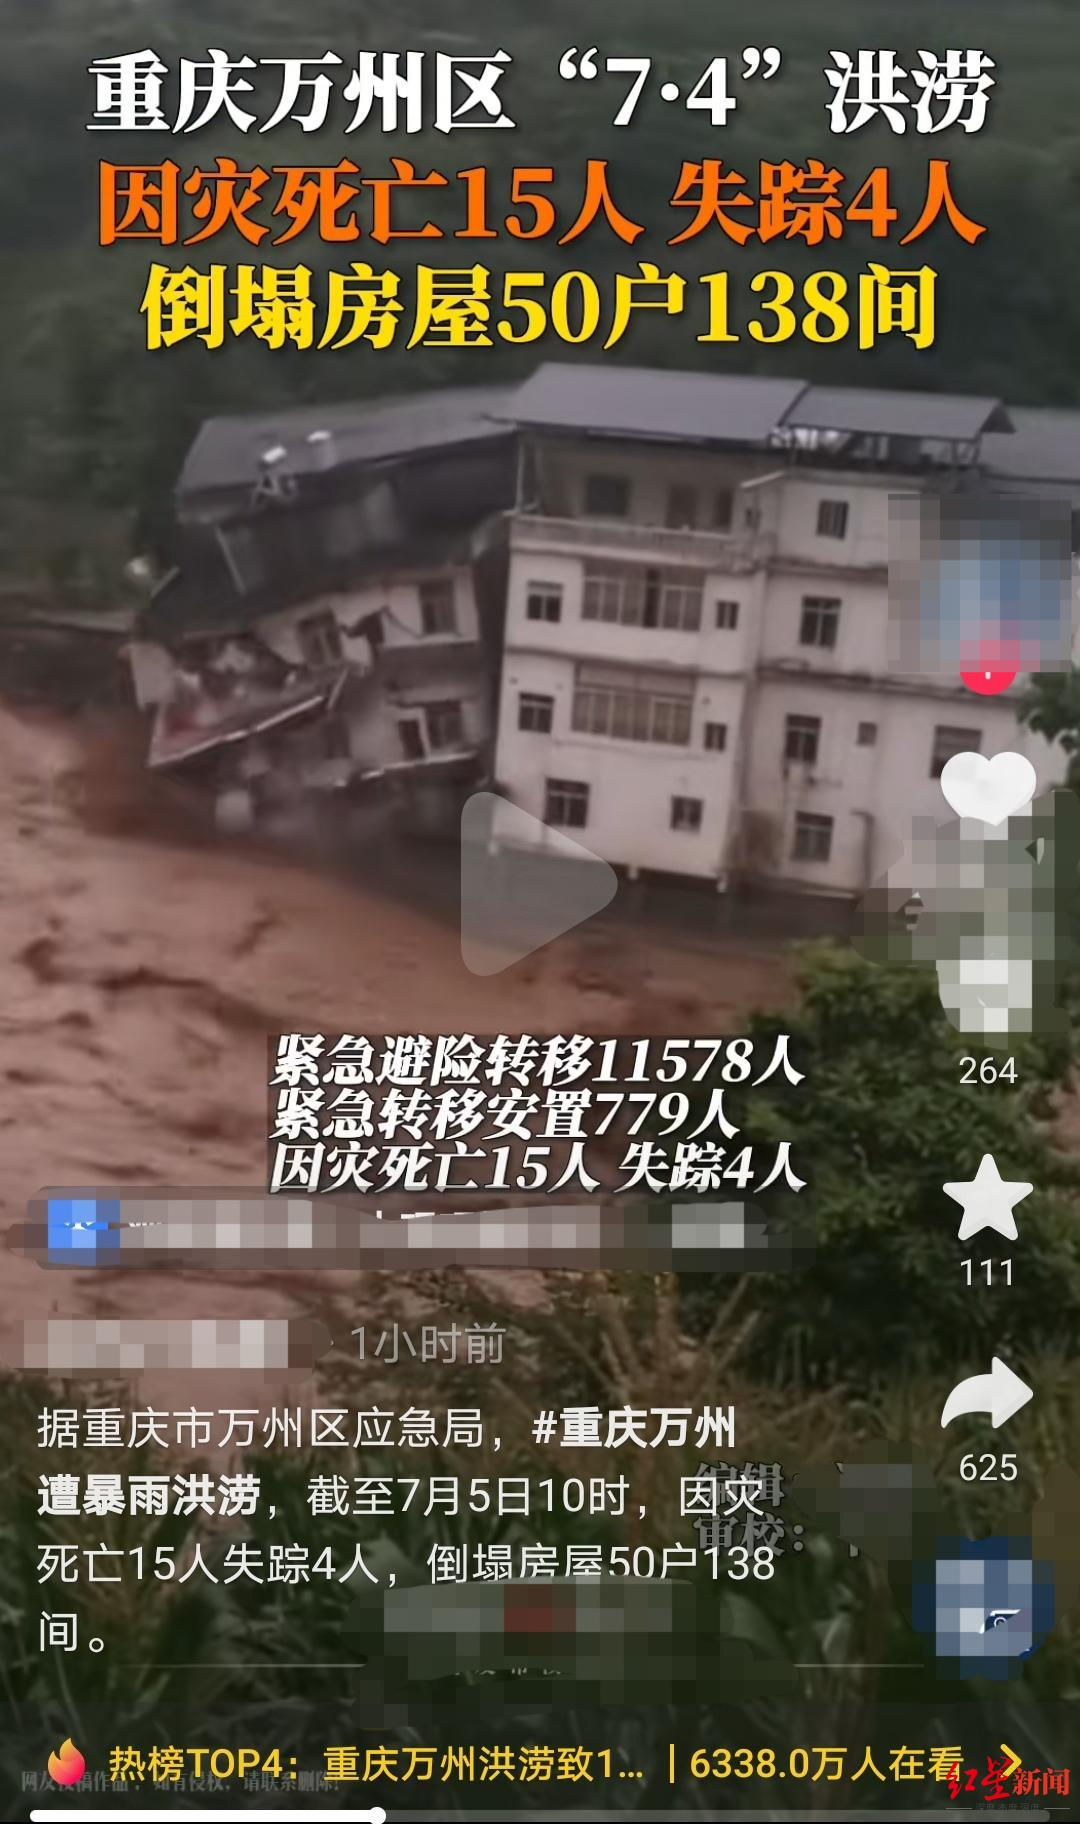 ↑有媒体报道万州暴雨灾情时使用了这段视频